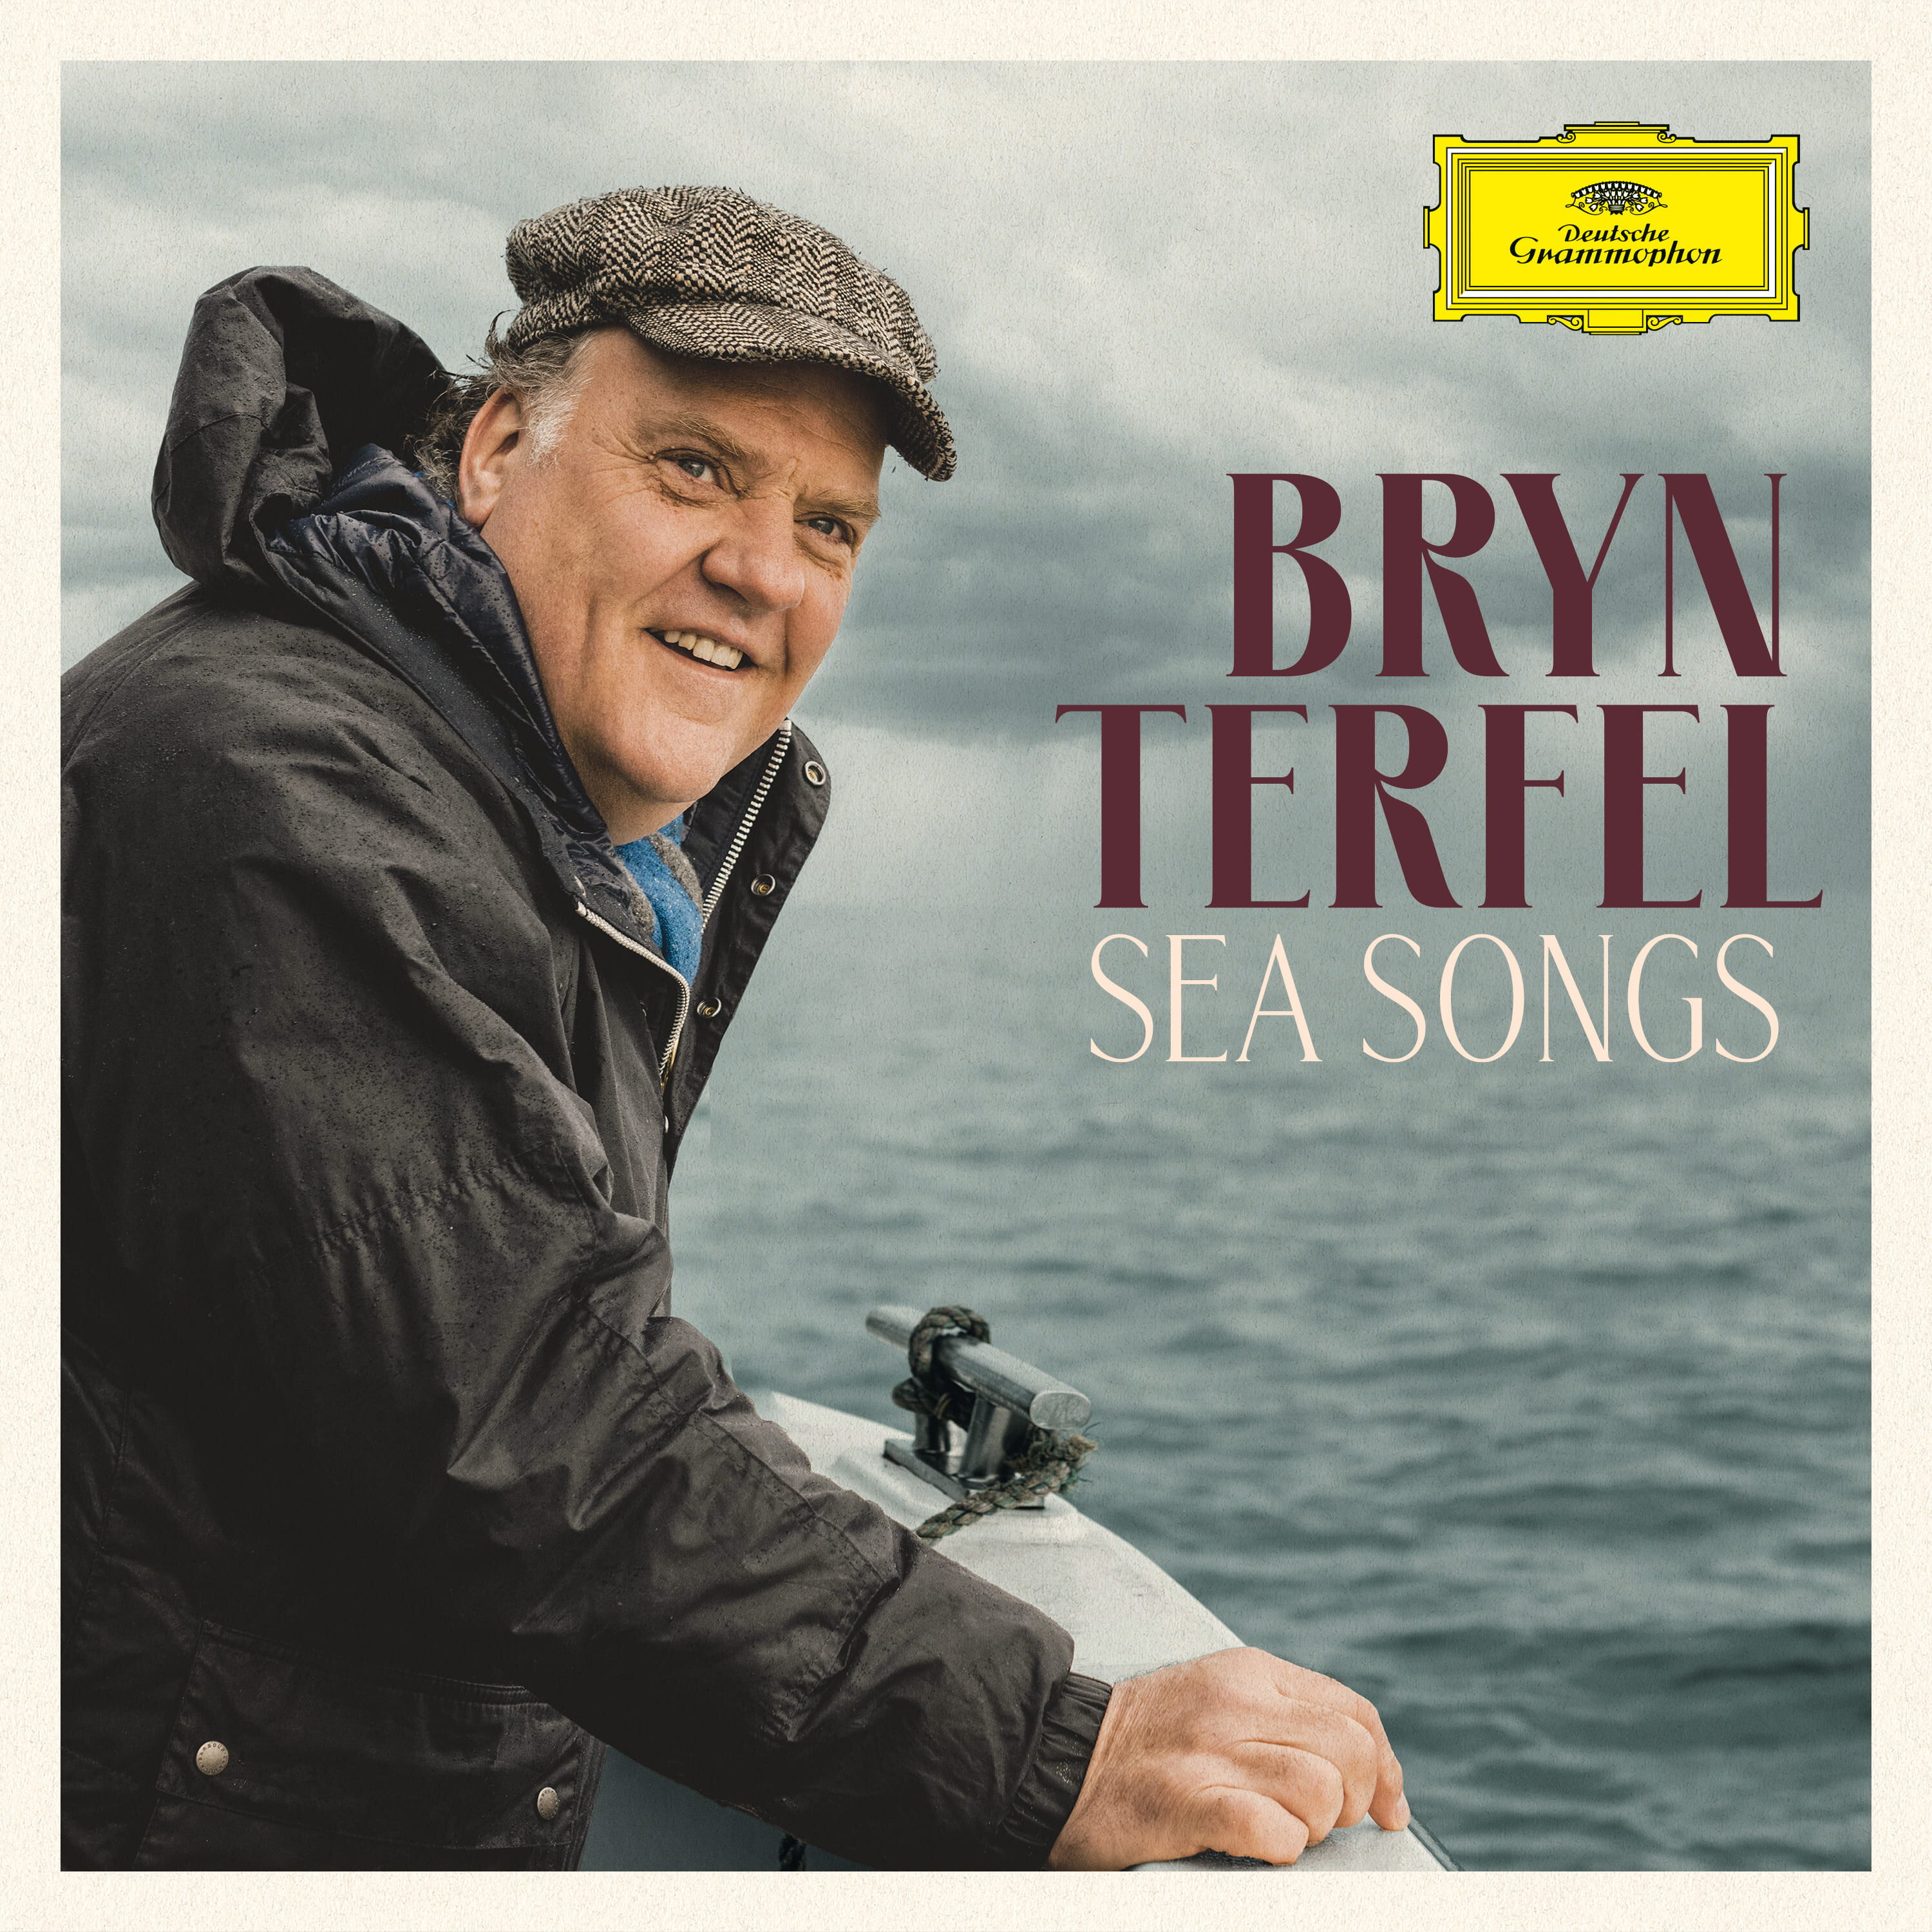 브린 터펠의 Sea Songs이란 앨범의 이미지입니다.